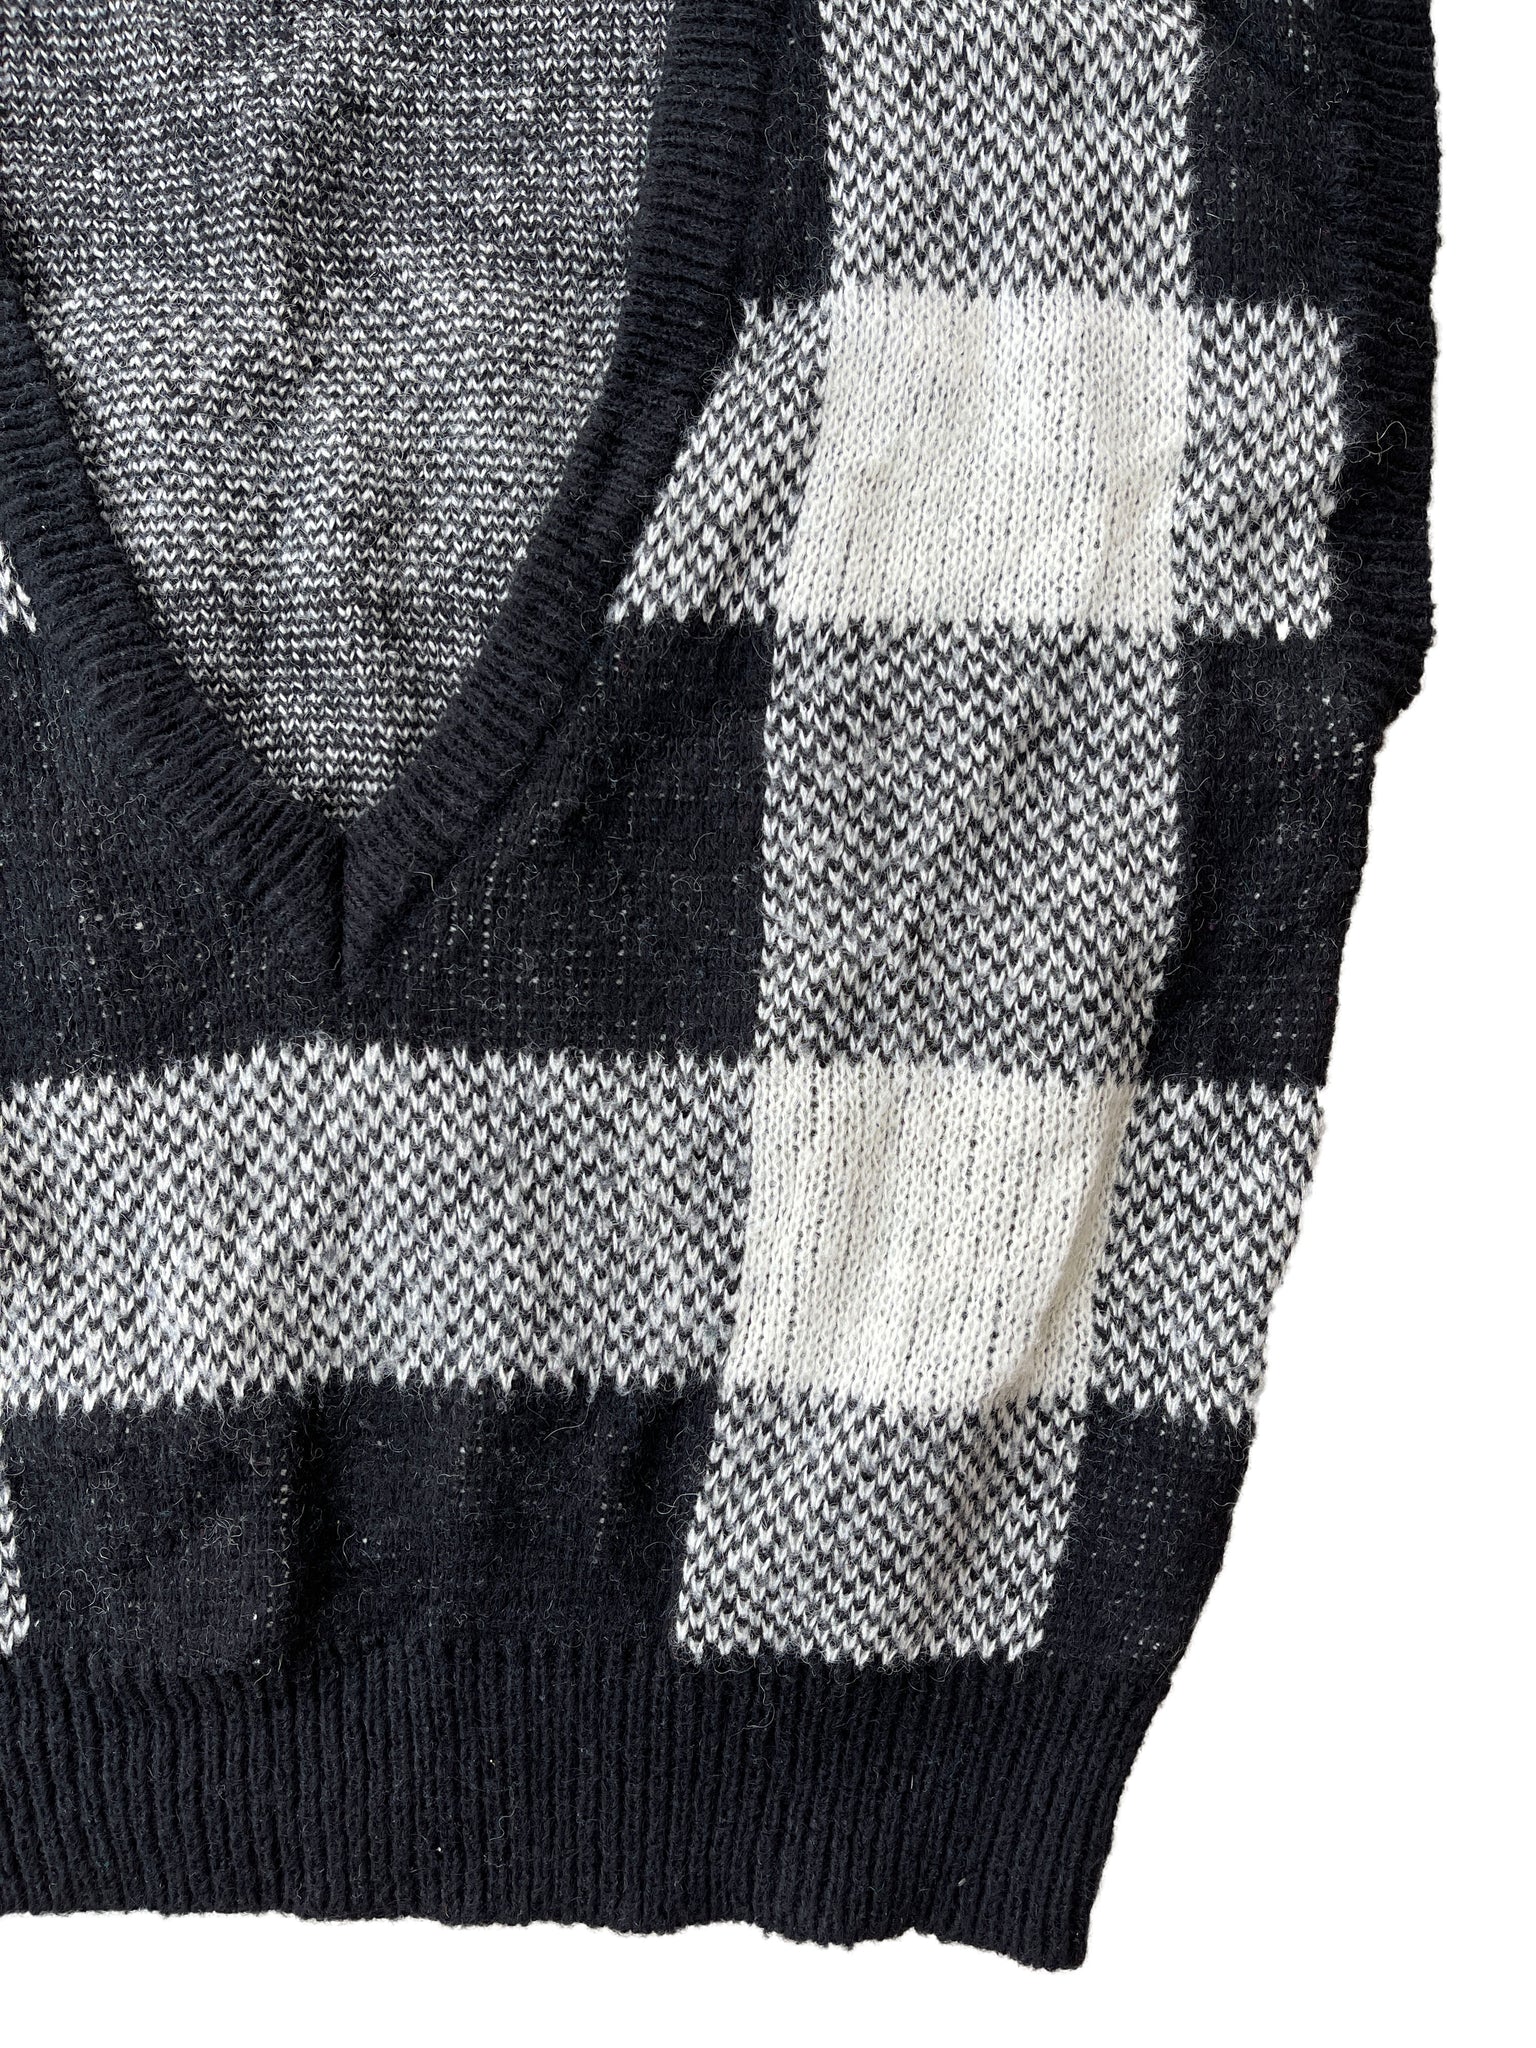 vintage plaid sweater vest